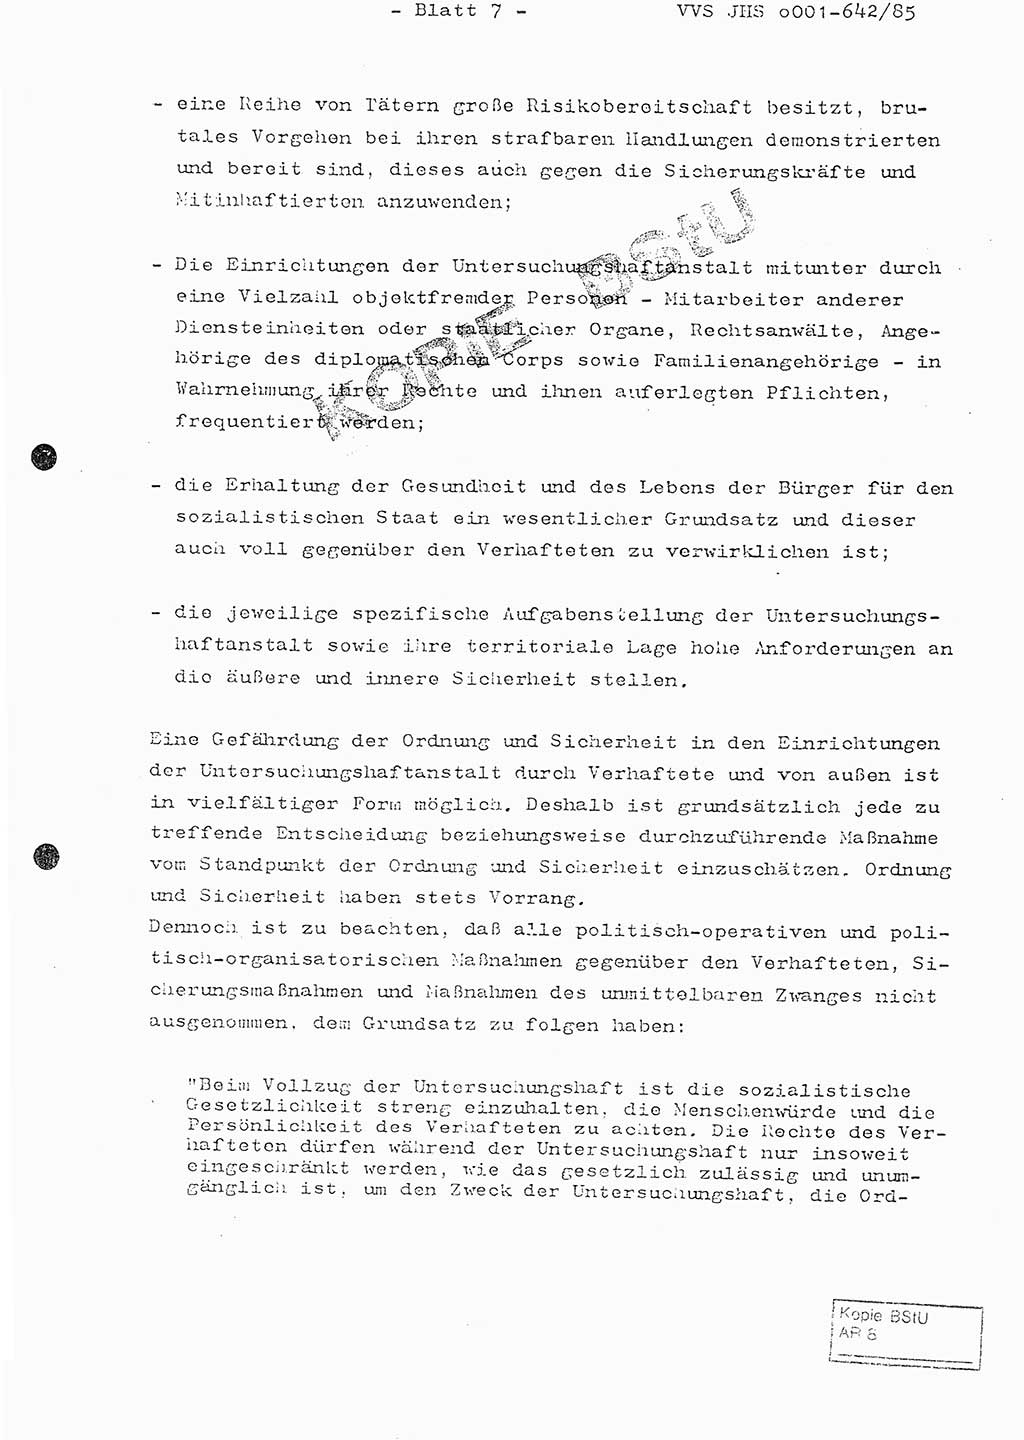 Fachschulabschlußarbeit Oberleutnant Lothar Fahland (Abt. ⅩⅣ), Ministerium für Staatssicherheit (MfS) [Deutsche Demokratische Republik (DDR)], Juristische Hochschule (JHS), Vertrauliche Verschlußsache (VVS) o001-642/85, Potsdam 1985, Blatt 7 (FS-Abschl.-Arb. MfS DDR JHS VVS o001-642/85 1985, Bl. 7)